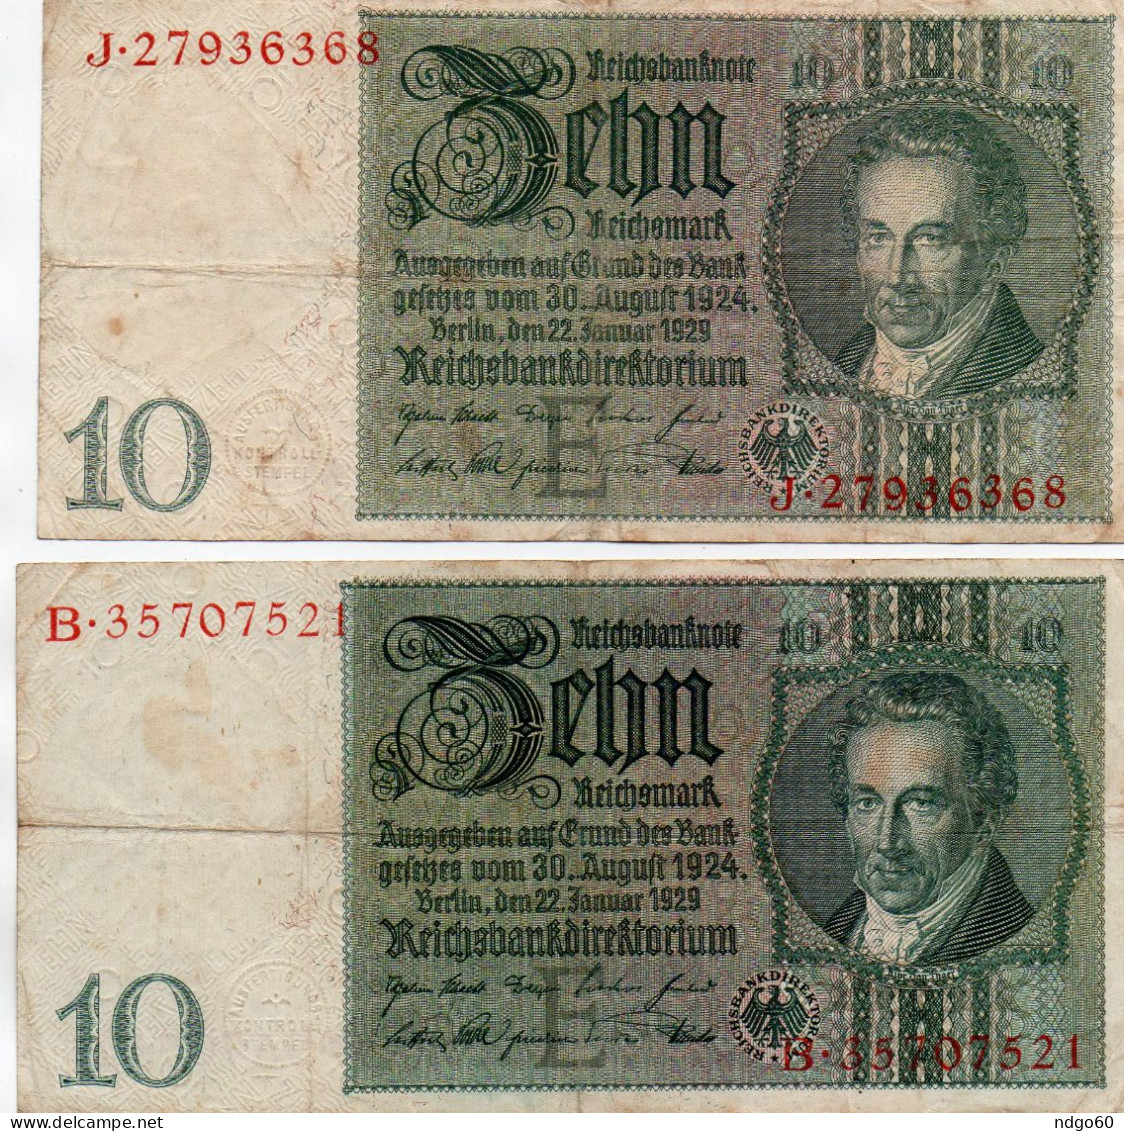 2 Billets De 10 Reichsmark ( Reichsbanknote) - 10 Mark